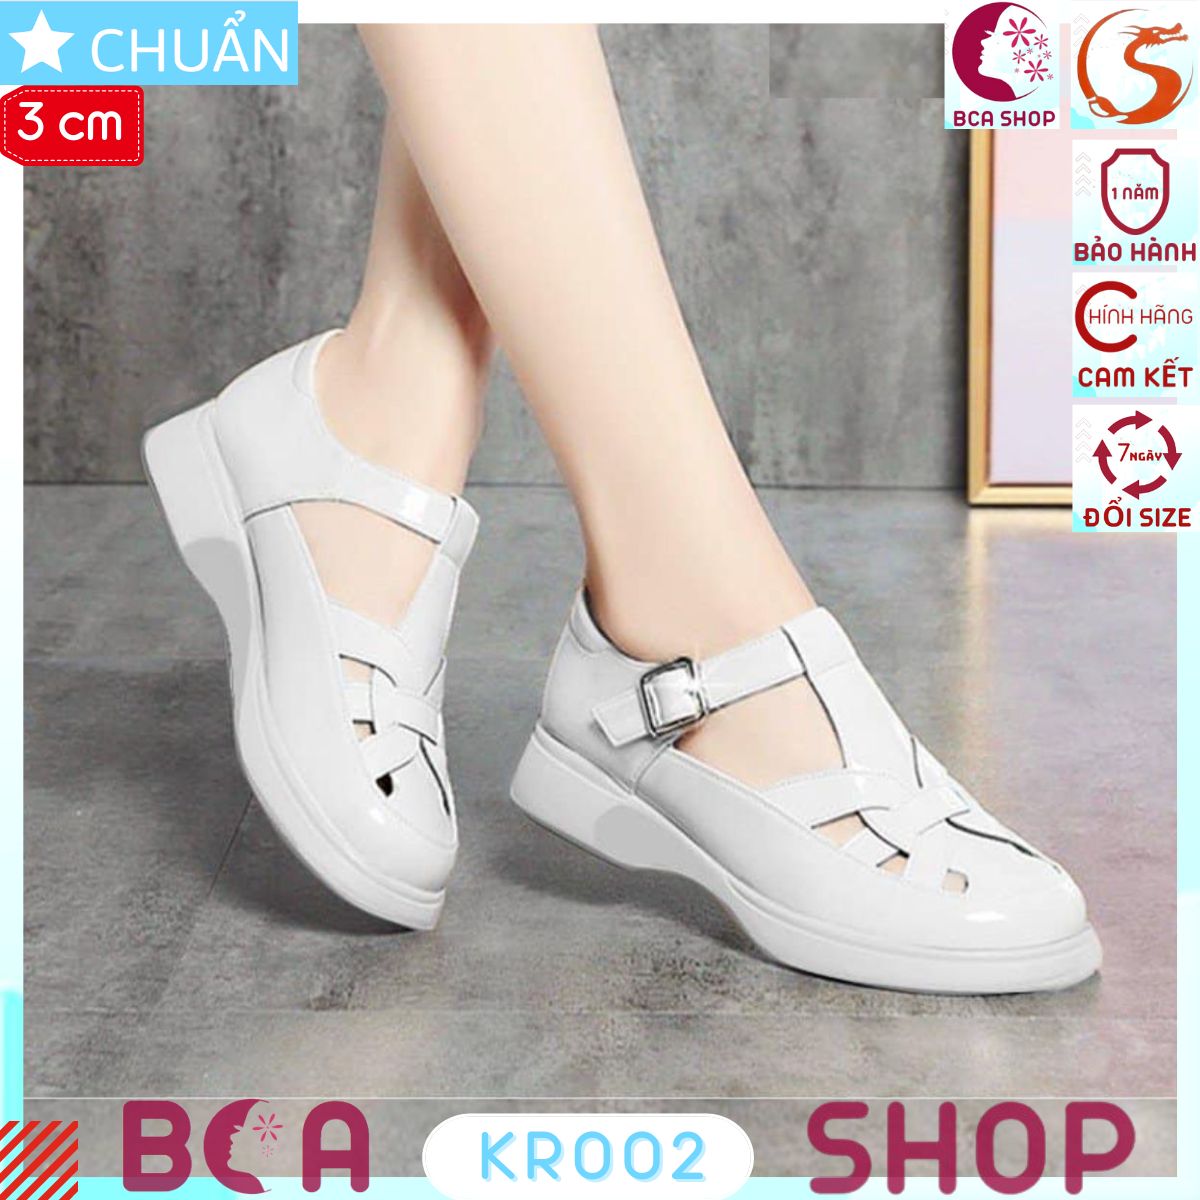 Giày bé gái màu trắng 3p KRO02 kiểu dáng xinh xắn, có thể để bé mang cùng quần jeans, legging và váy đều đáng yêu